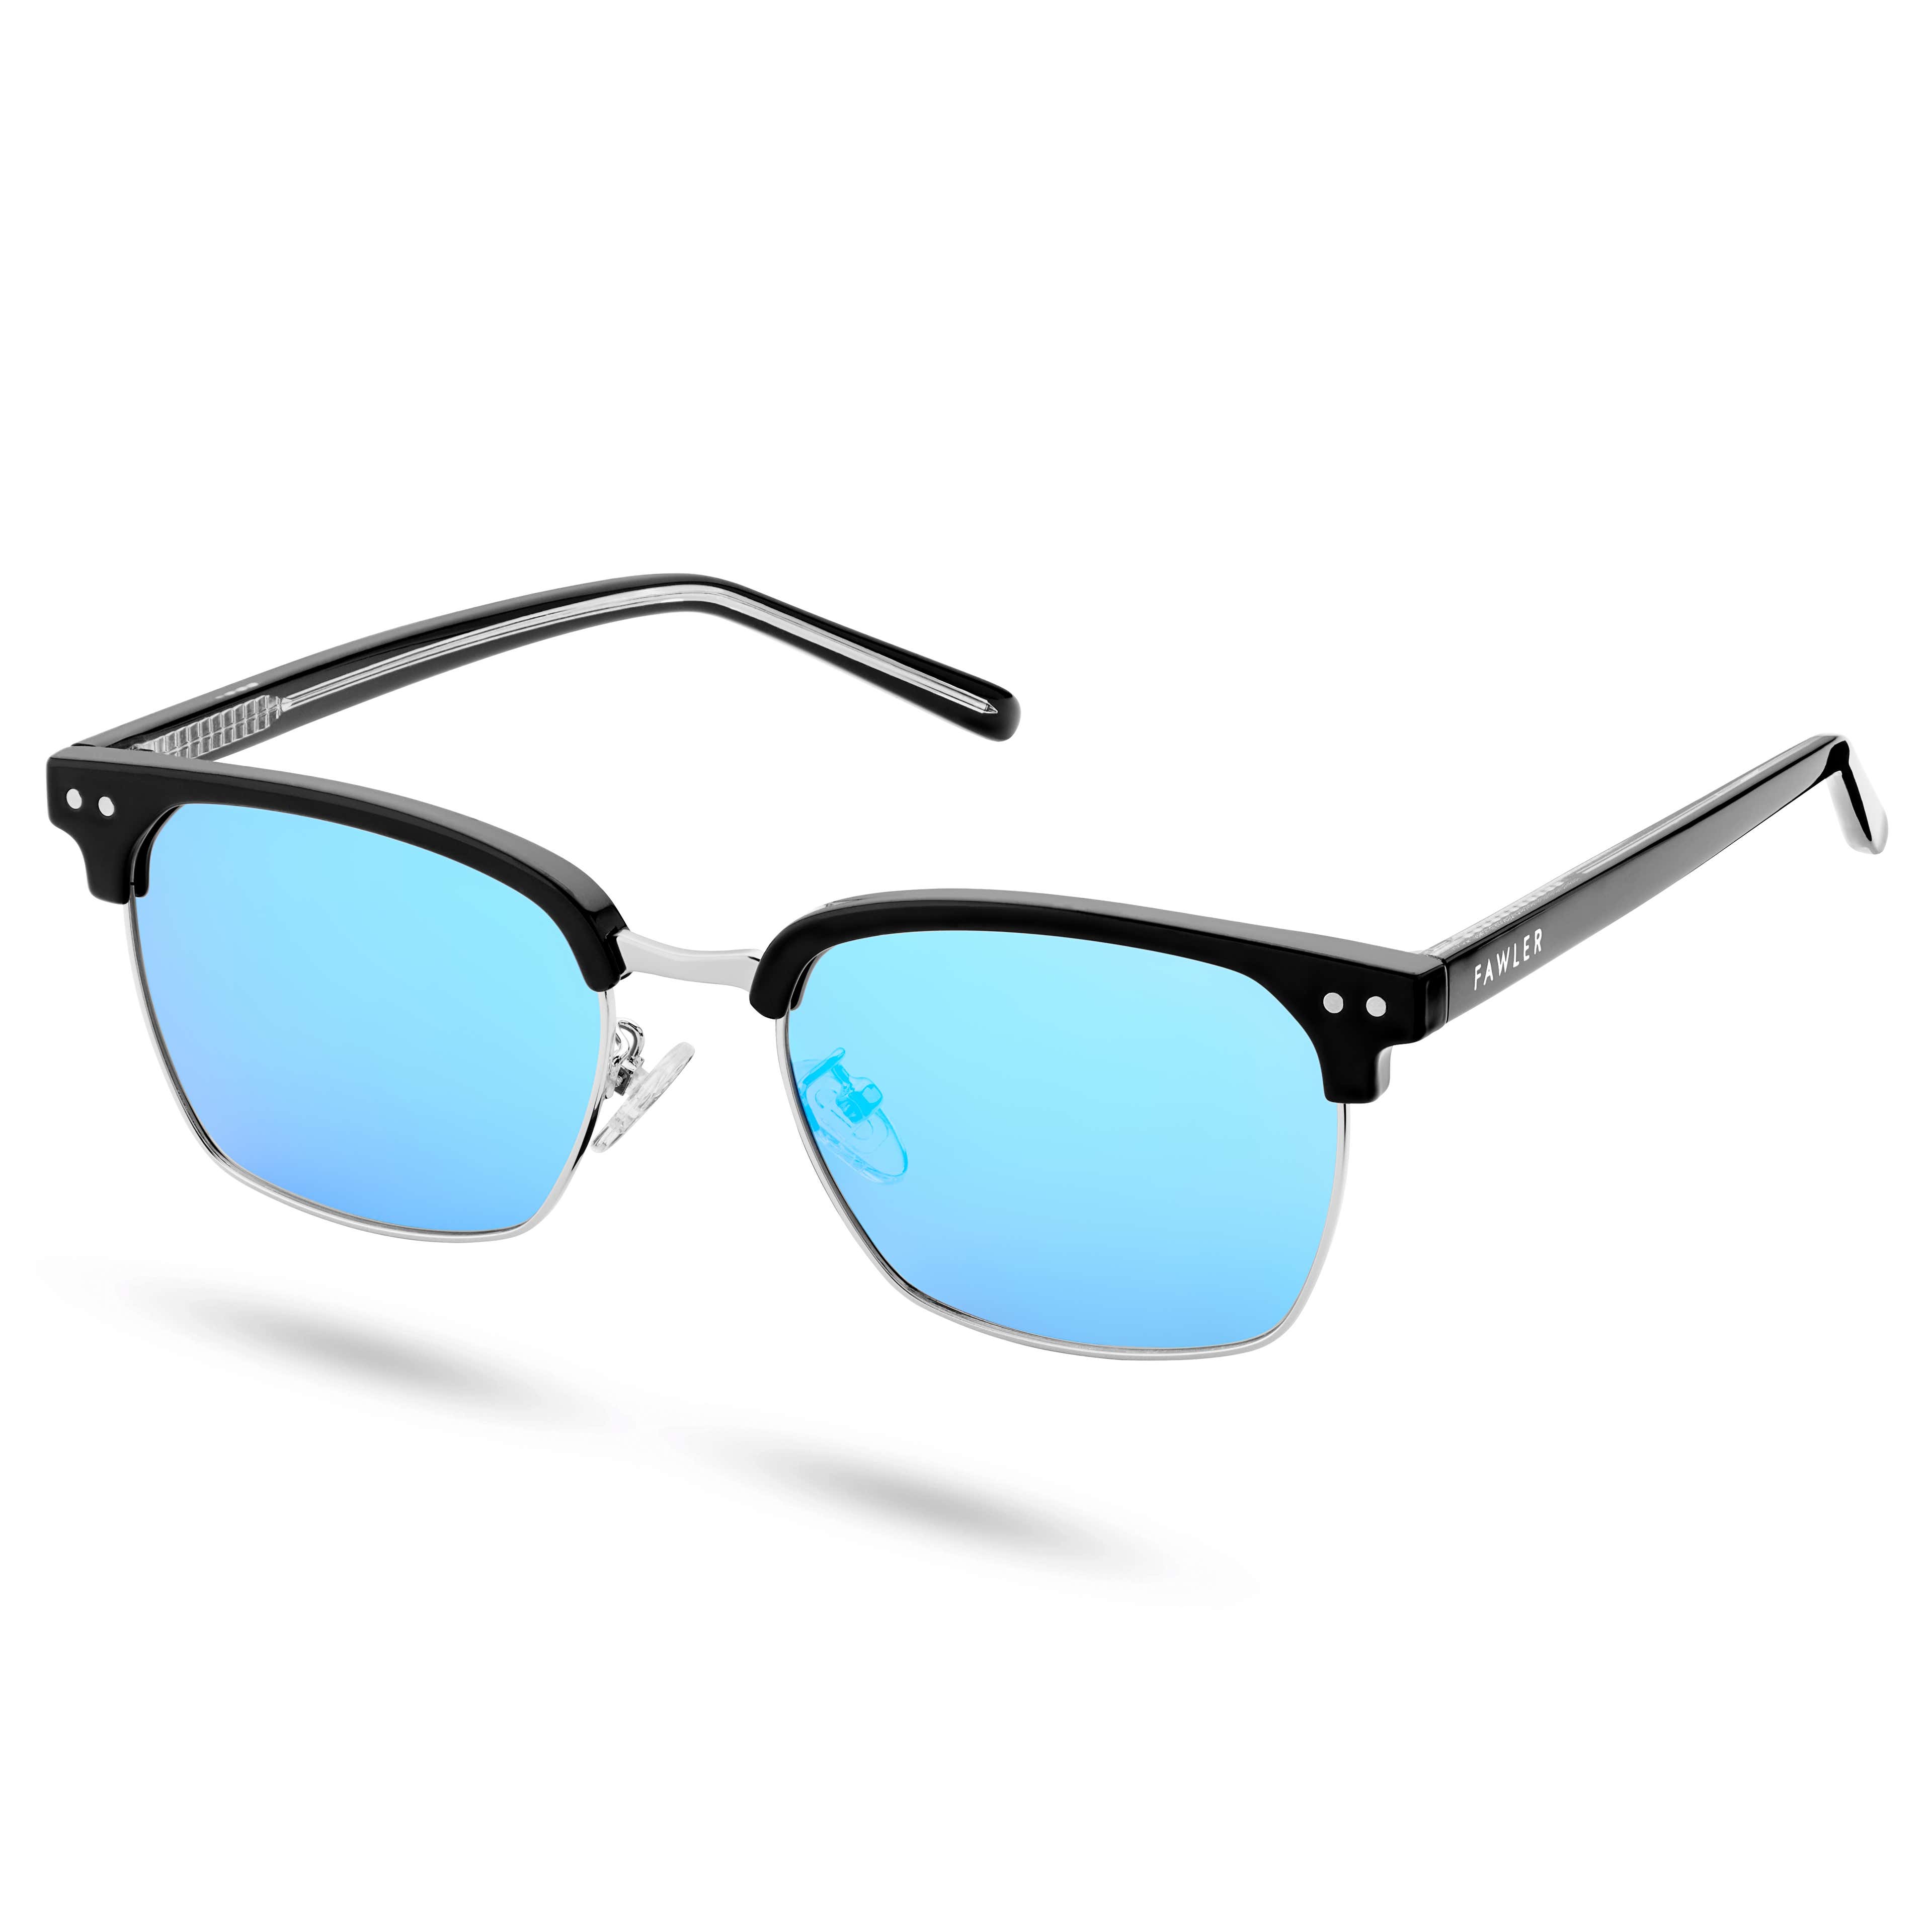 Schwarz-blaue polarisierte Browline-Sonnenbrille